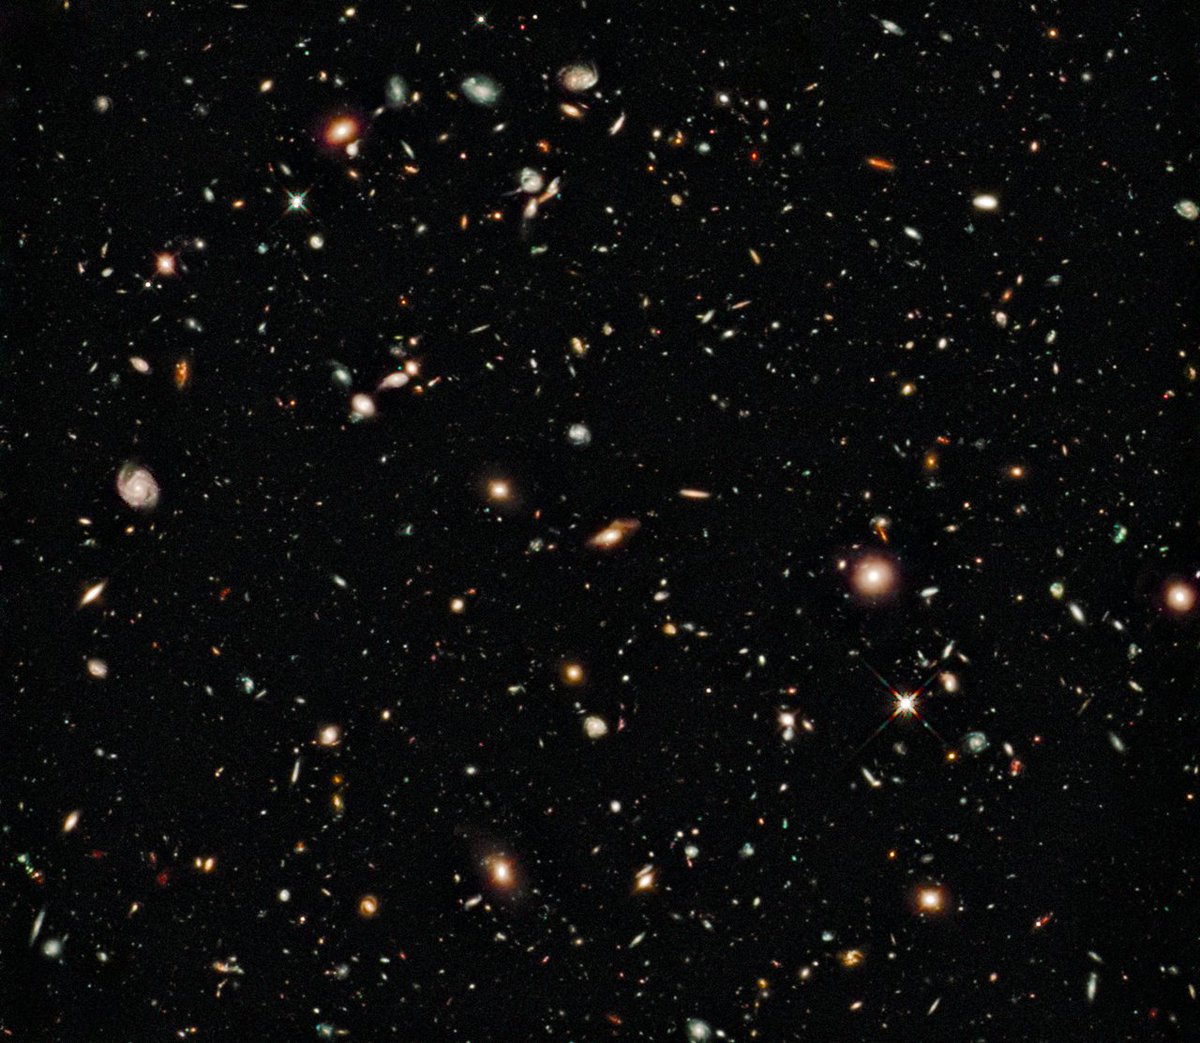  @niksluvsgot7 - Miss Nikka Hubble Ultra Deep Field #GOT7  #갓세븐  @GOT7Official  #GOT7_DYE  #GOT7_NOTBYTHEMOON